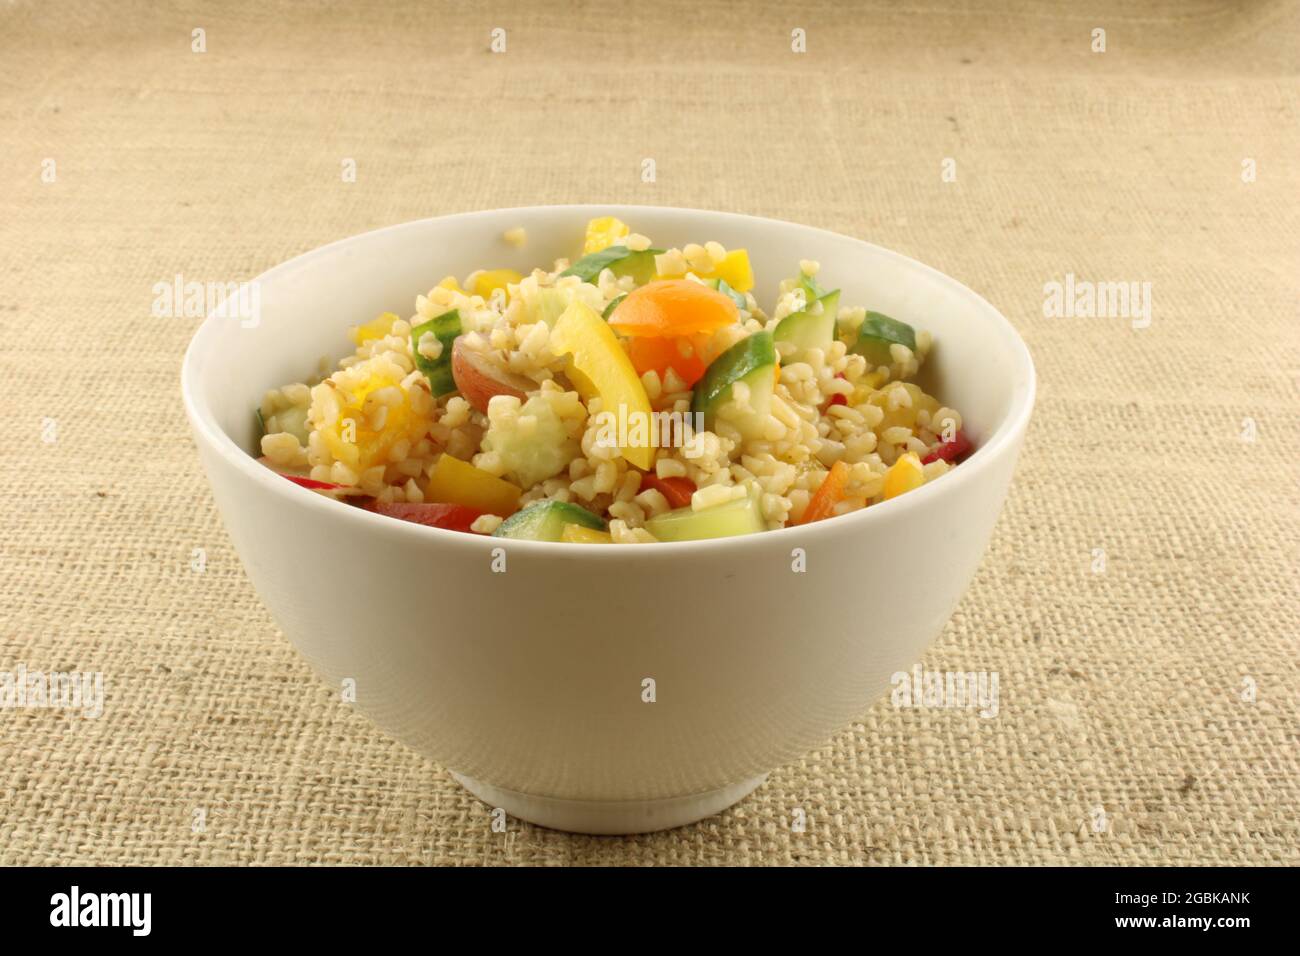 Salade de Bulgur fraîchement préparée avec fruits et légumes colorés dans un bol blanc sur fond hessien brun Banque D'Images